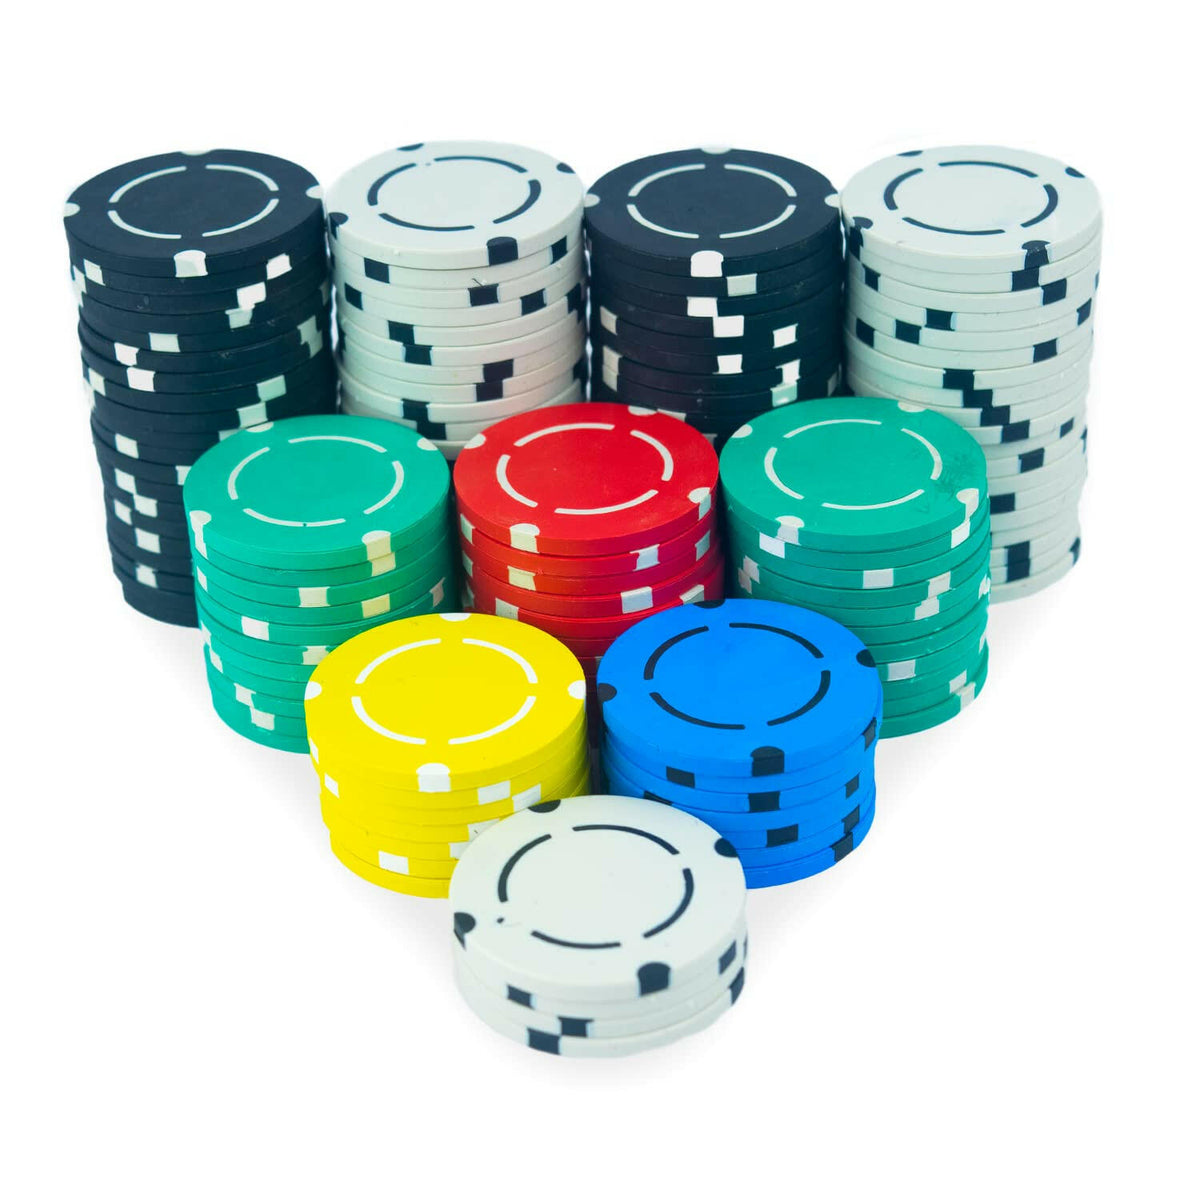 Buy Online Casinokart 300 Clay Poker Chip Set At Discount Price